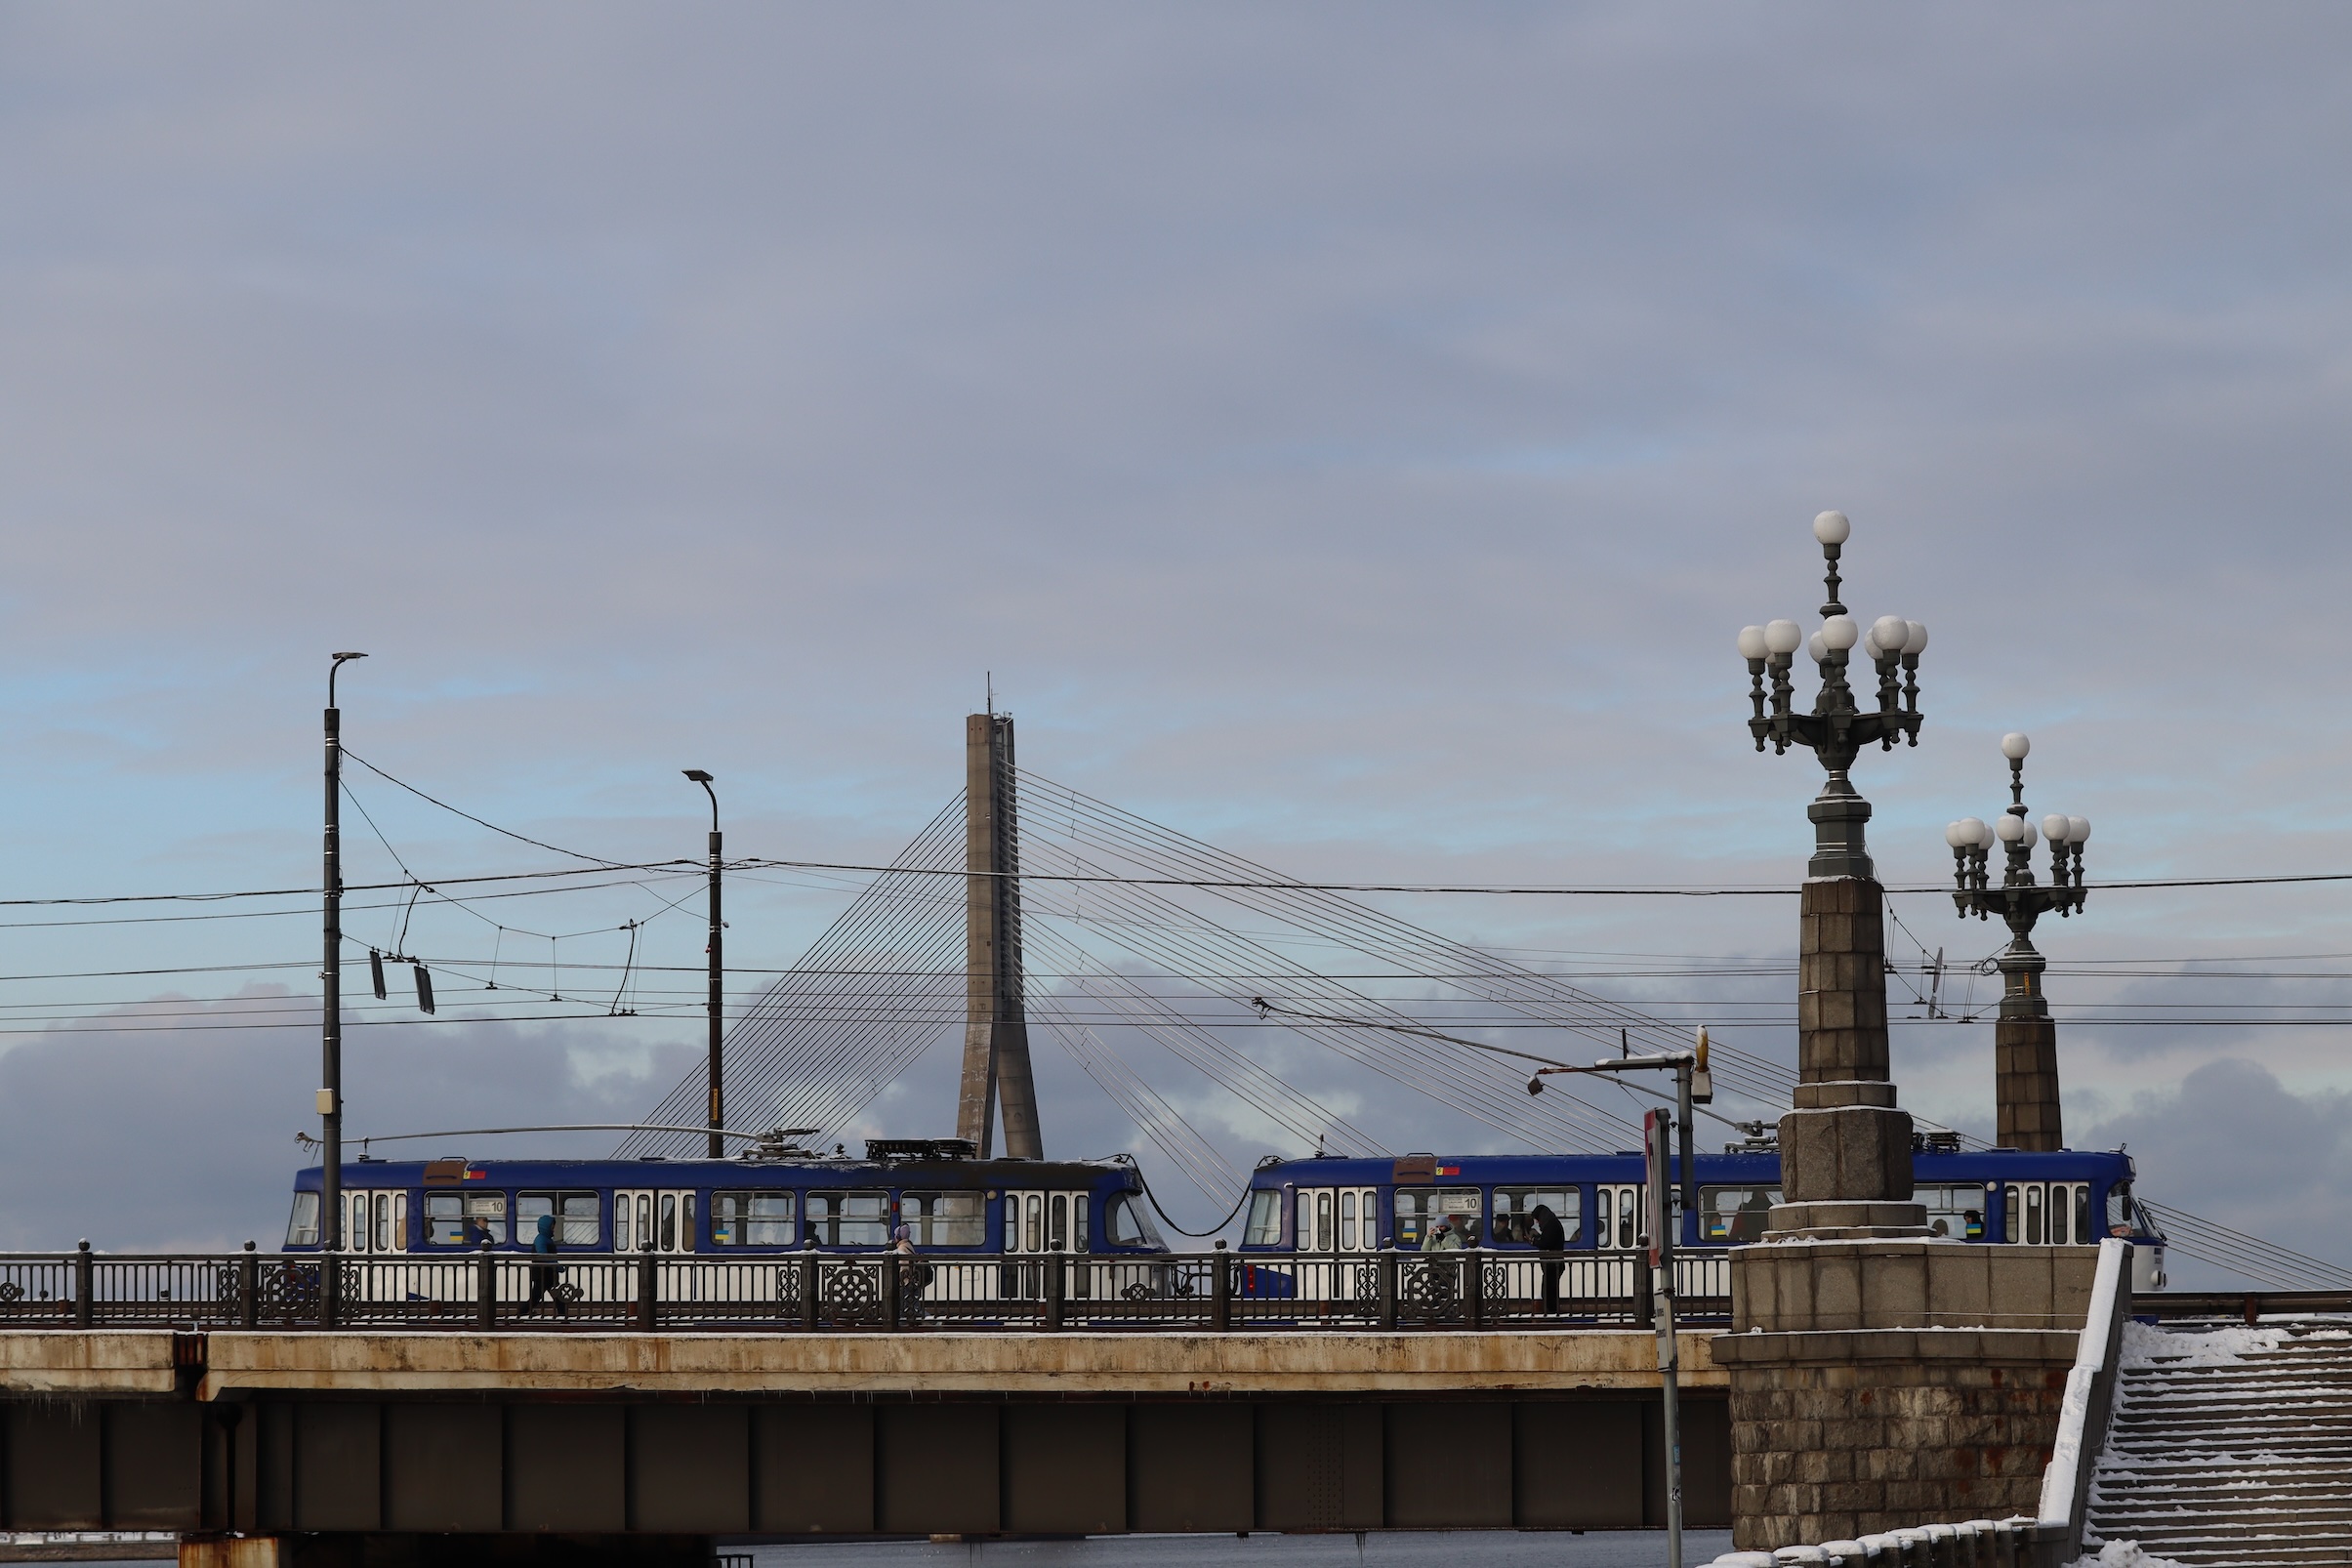 A tram crosses a bridge in Riga